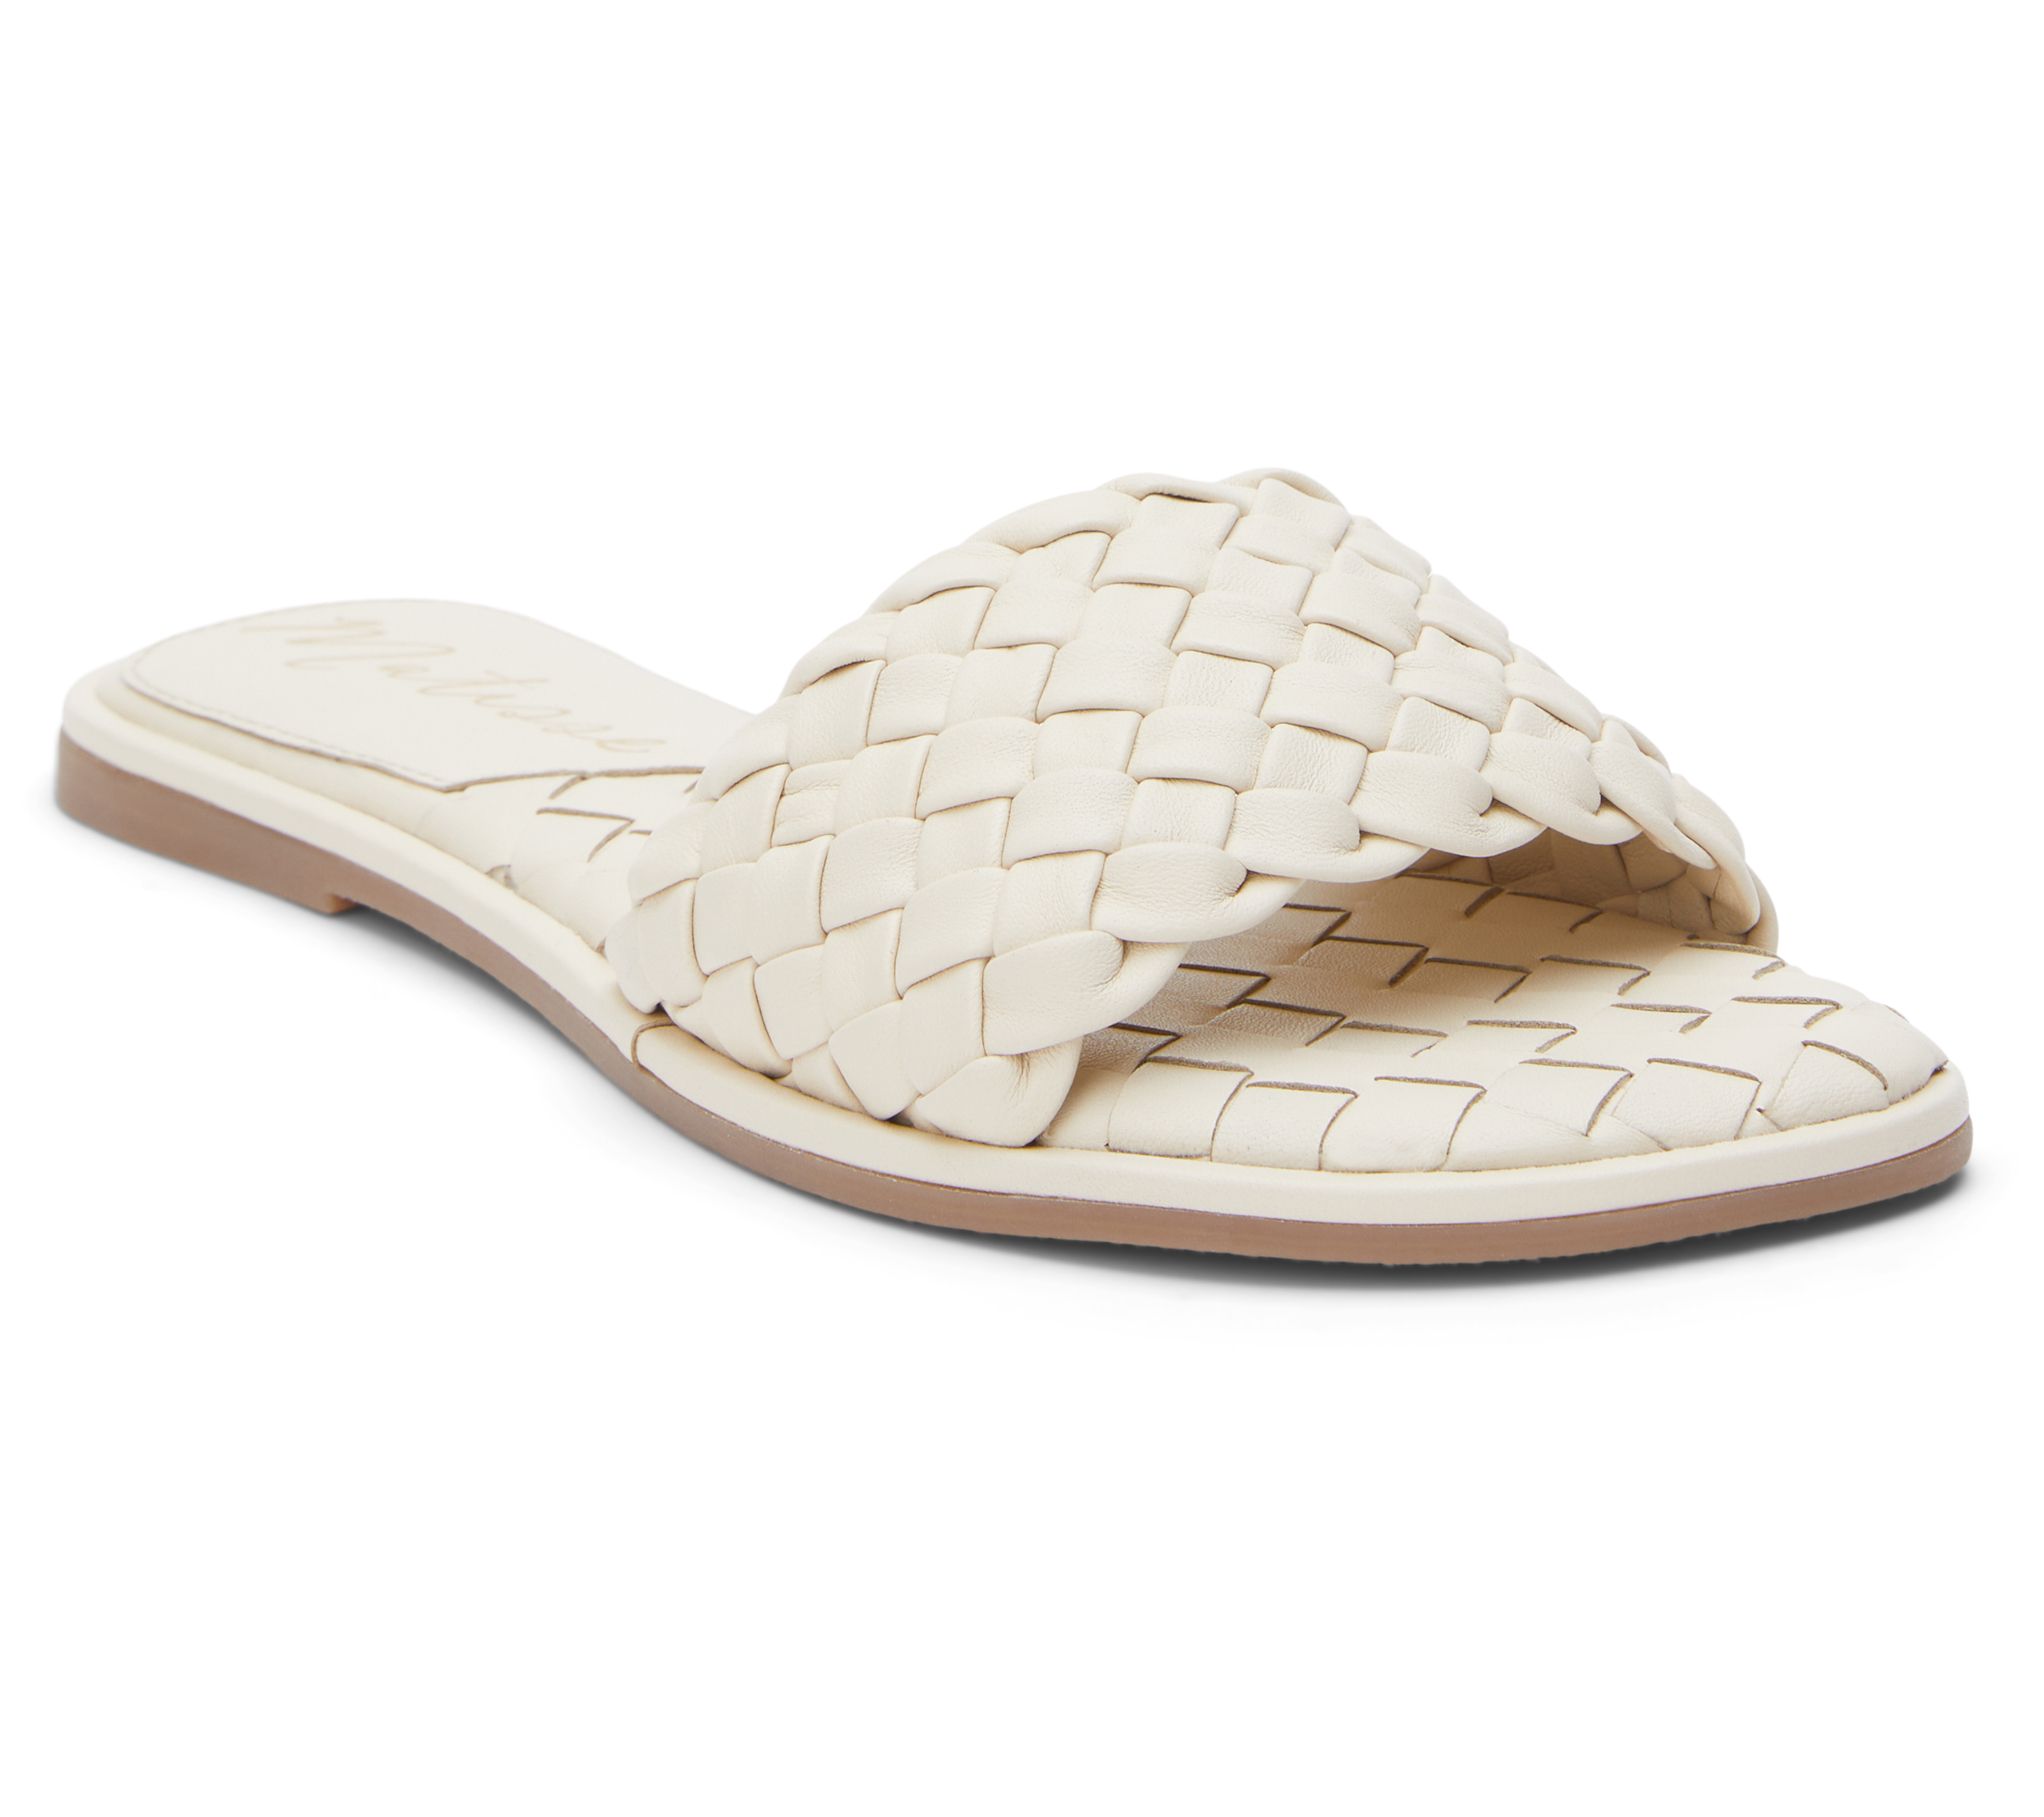 Matisse Leather Sandal - Shana - QVC.com